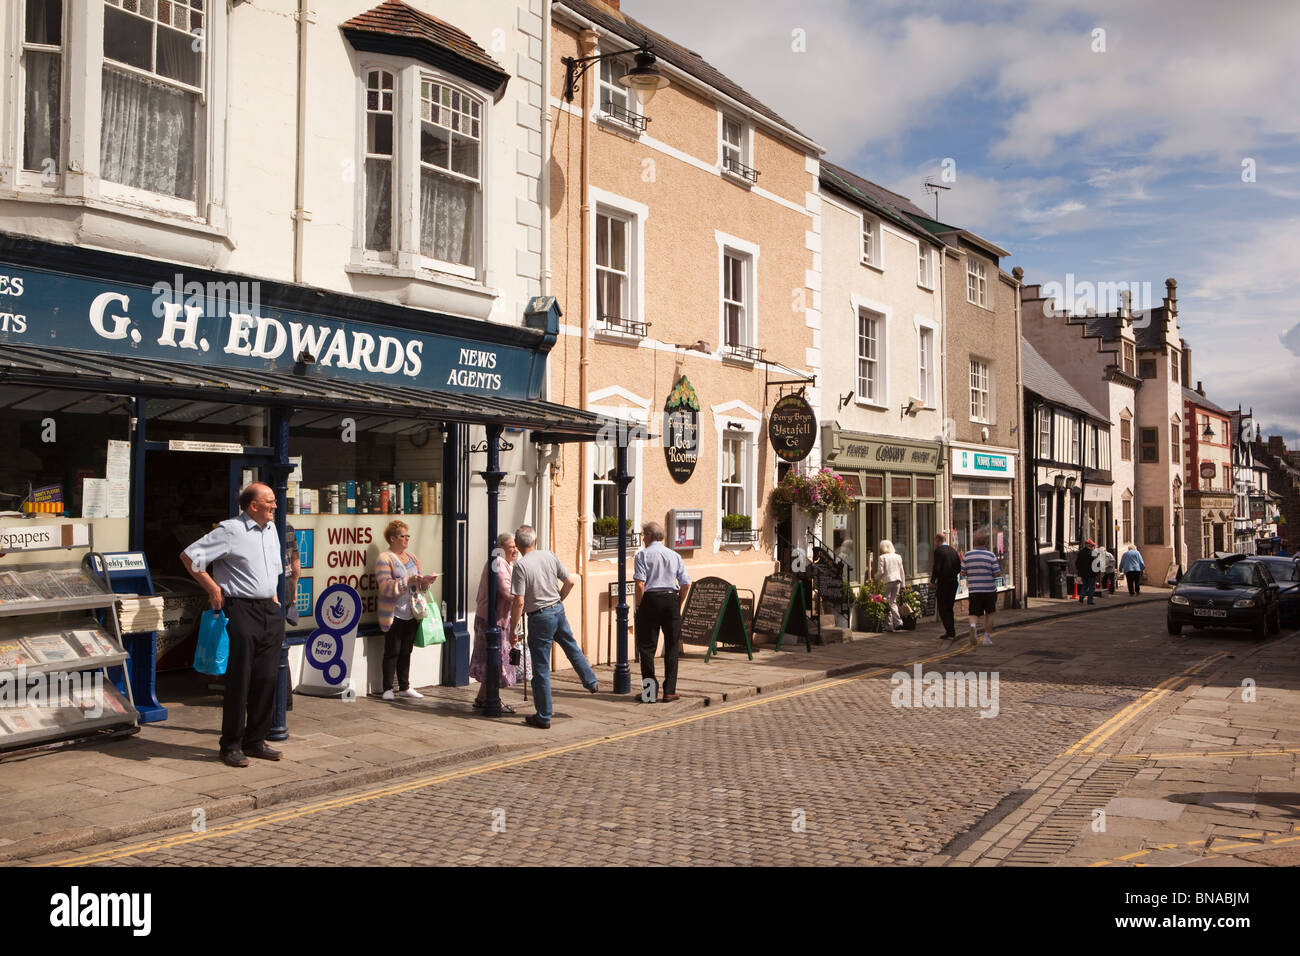 Wales, Gwynedd, Conway, High Street towards Plas Mawr Stock Photo